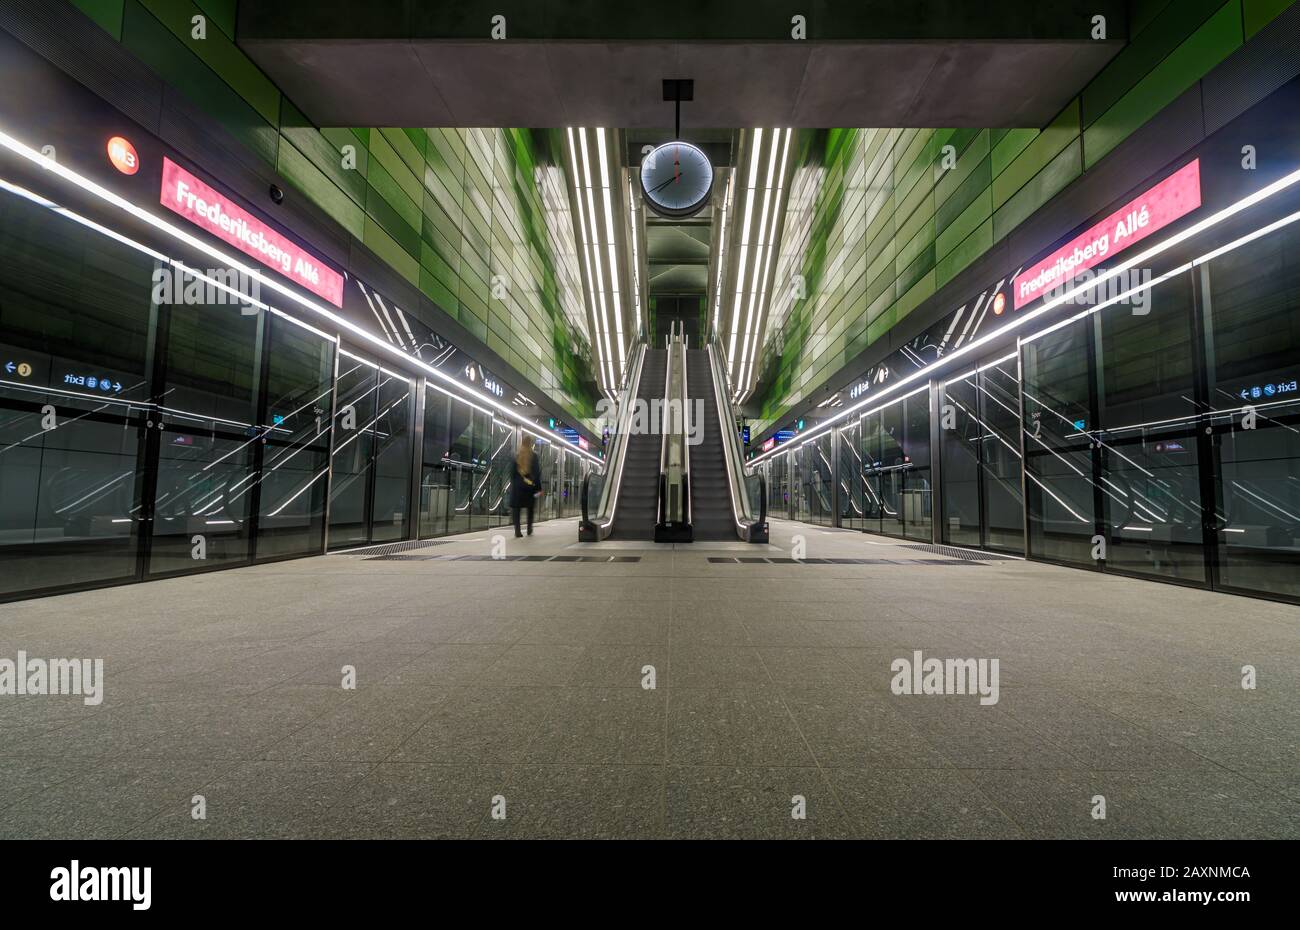 La piattaforma della stazione della metropolitana Frederiksberg Allé sulla nuova metropolitana Cityringen di Copenhagen Foto Stock